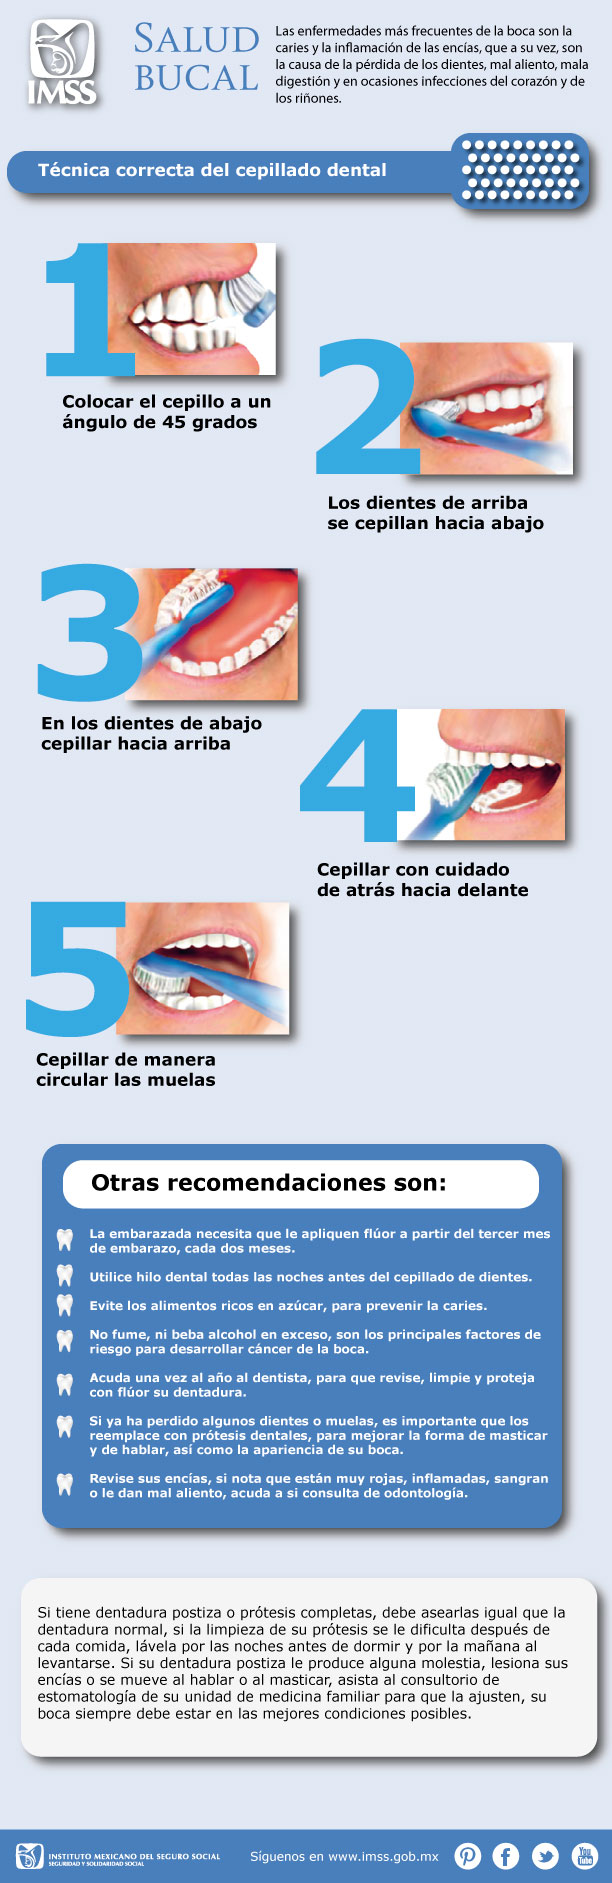 tornado comienzo Inactivo Infografía, Salud Bucal (Técnica correcta cepillado dental)